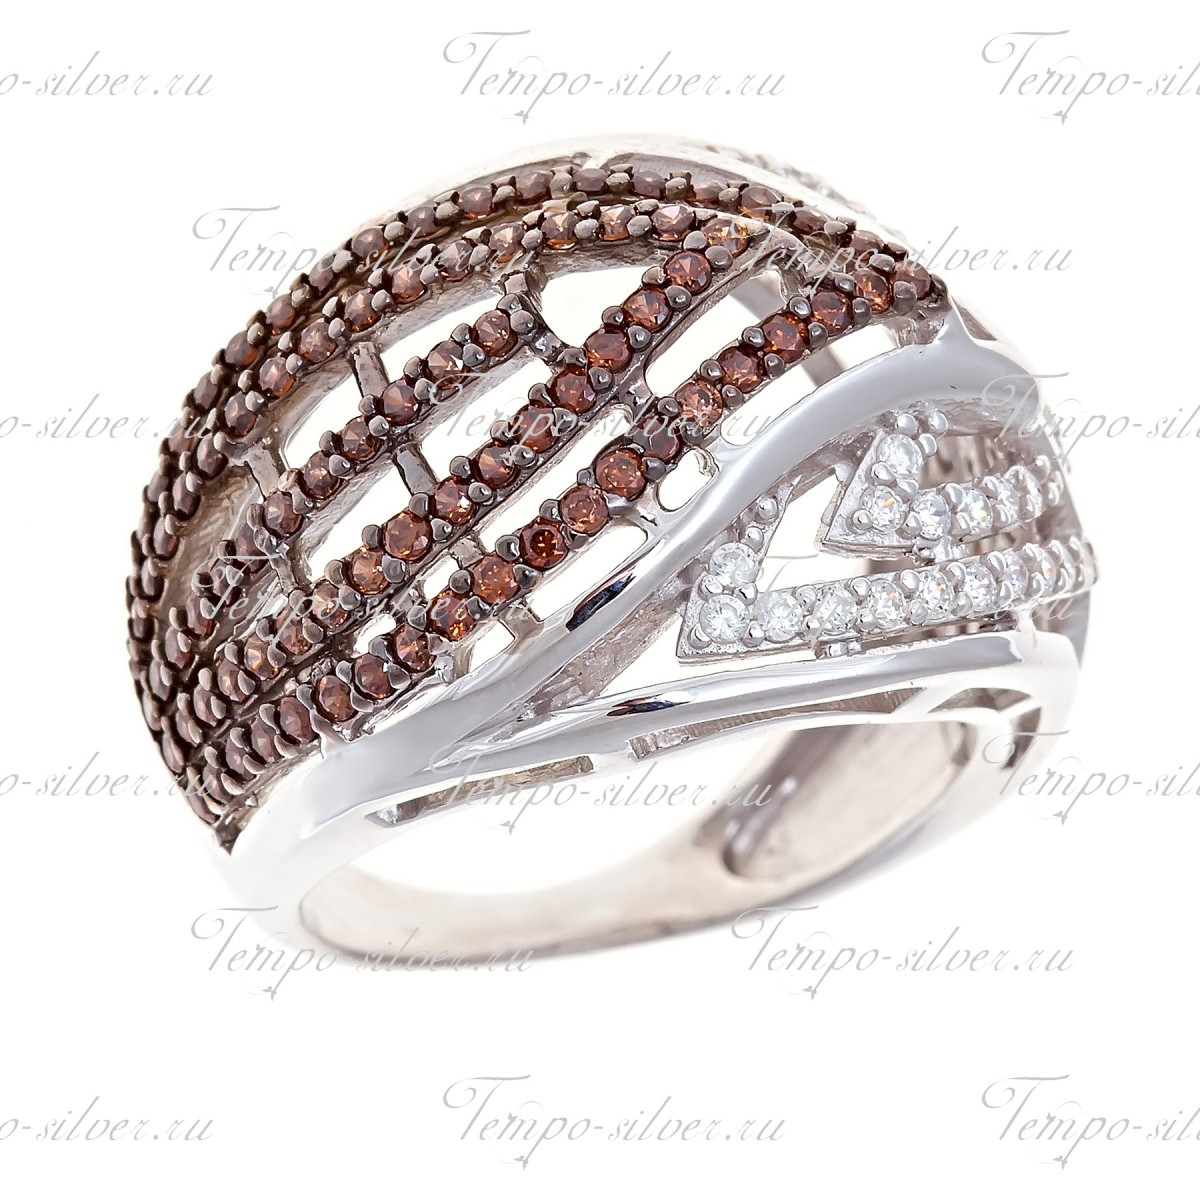 Кольцо обручального типа из серебра с кривыми линиями из белых и коричневых камней.